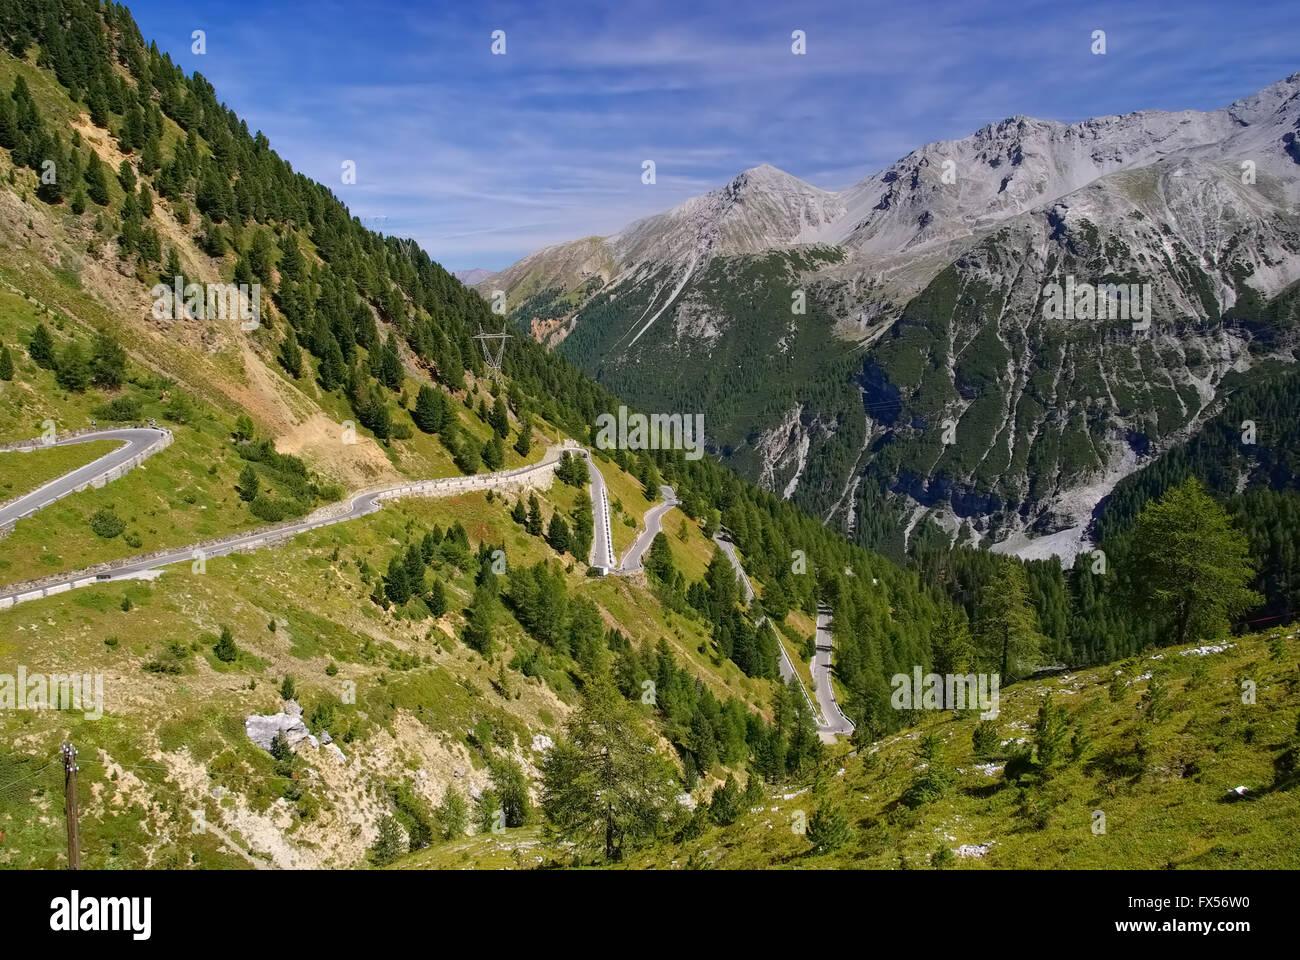 Stilfser Joch in Südtirol - Stelvio Pass in South Tyrol, European Alps Stock Photo